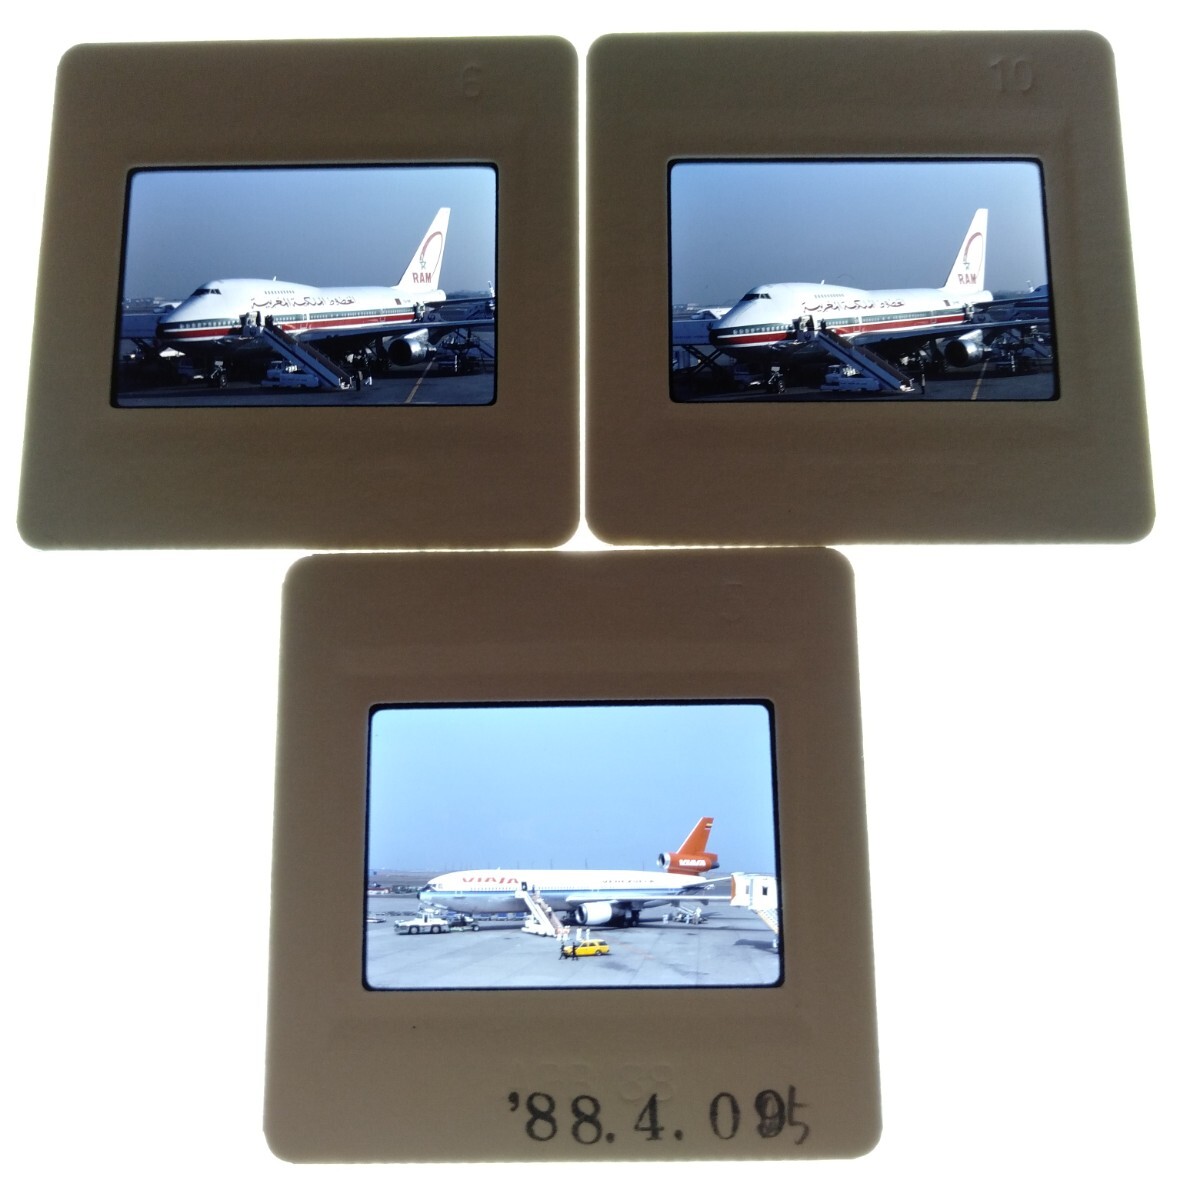 ネ123 航空機 旅客機 輸送機 エールフランス ネガ カメラマニア秘蔵品 蔵出し コレクション 15枚まとめて_画像3